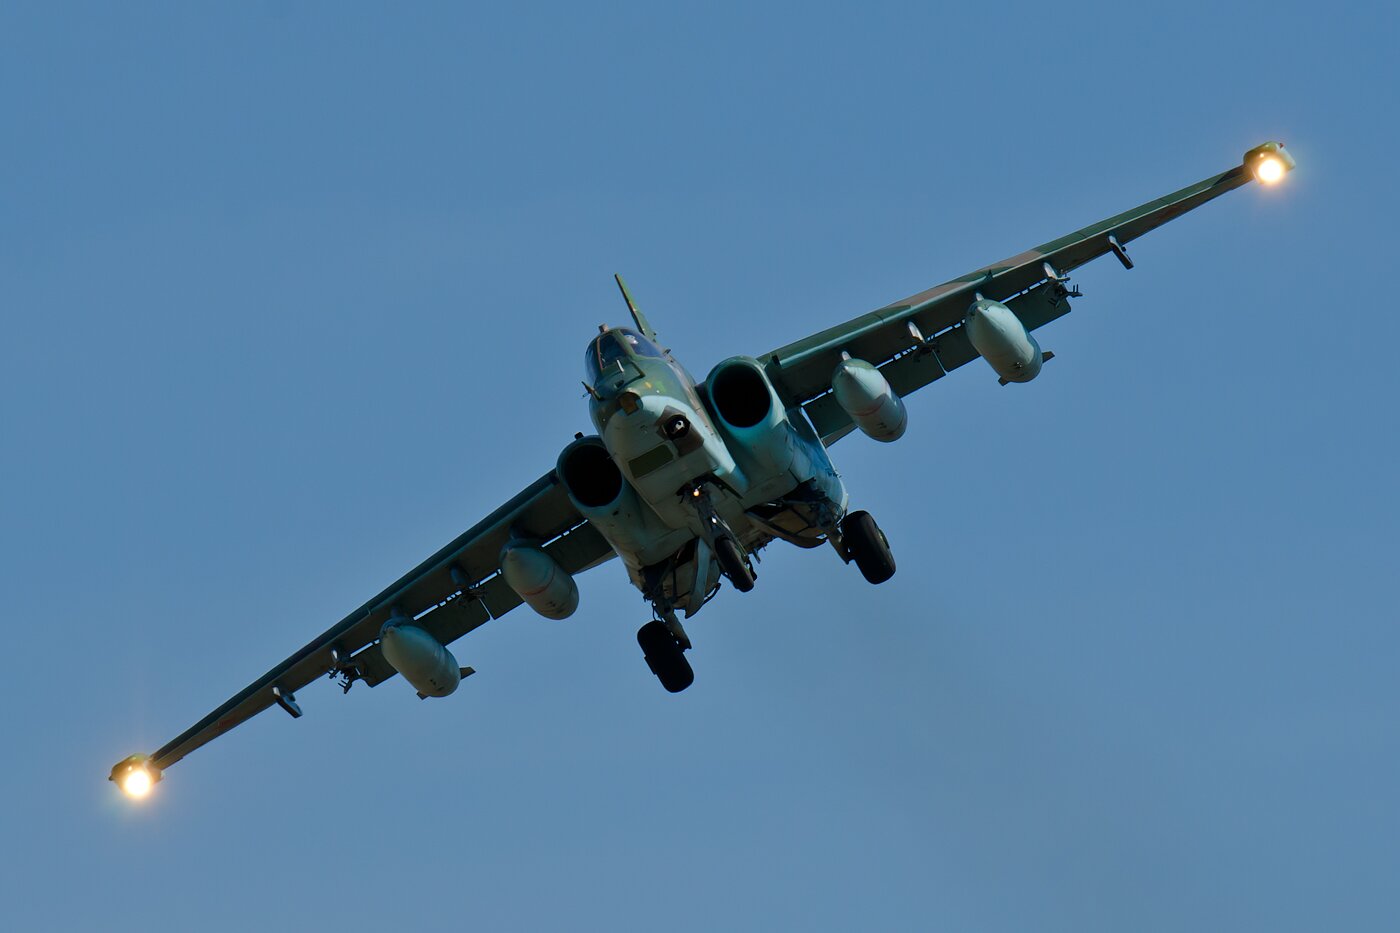 Сирийские боевики на зенитке бросили вызов пилоту российского Су-25 – кадры